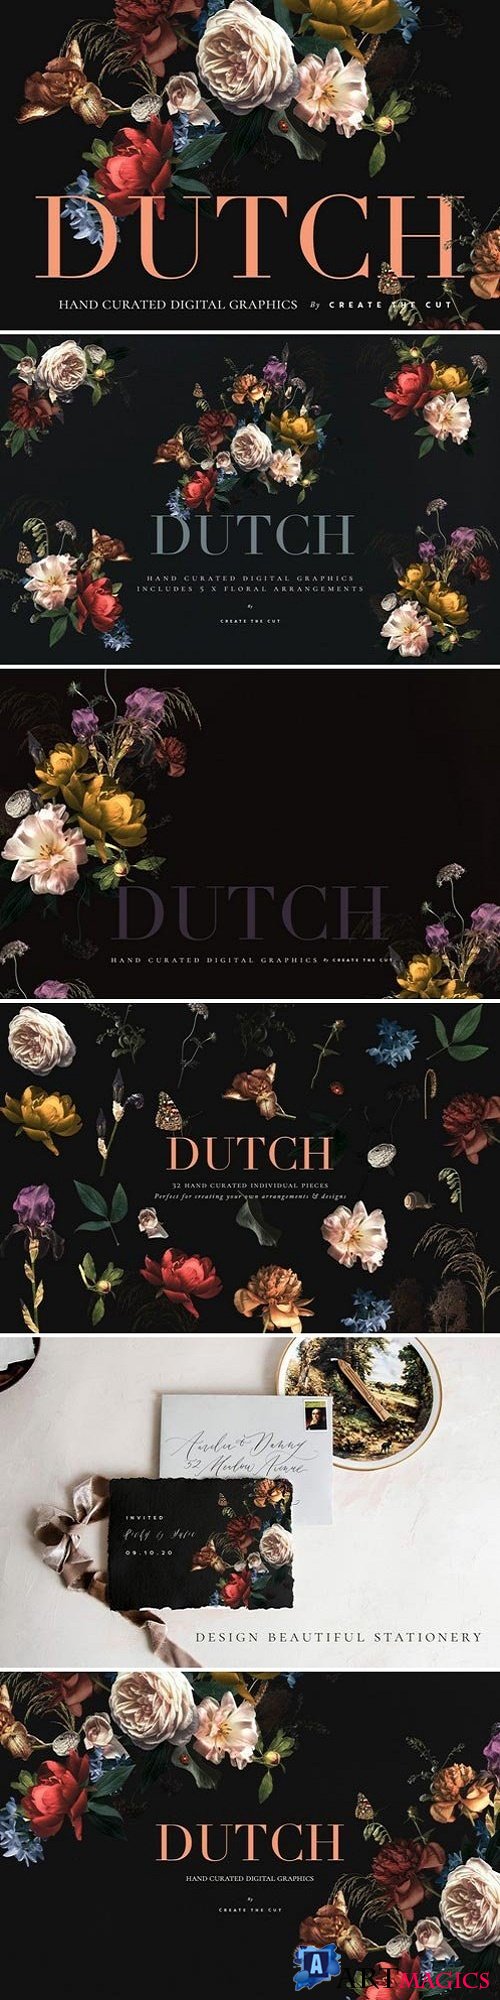 Vintage Floral Clip Art - Dutch - 2764886